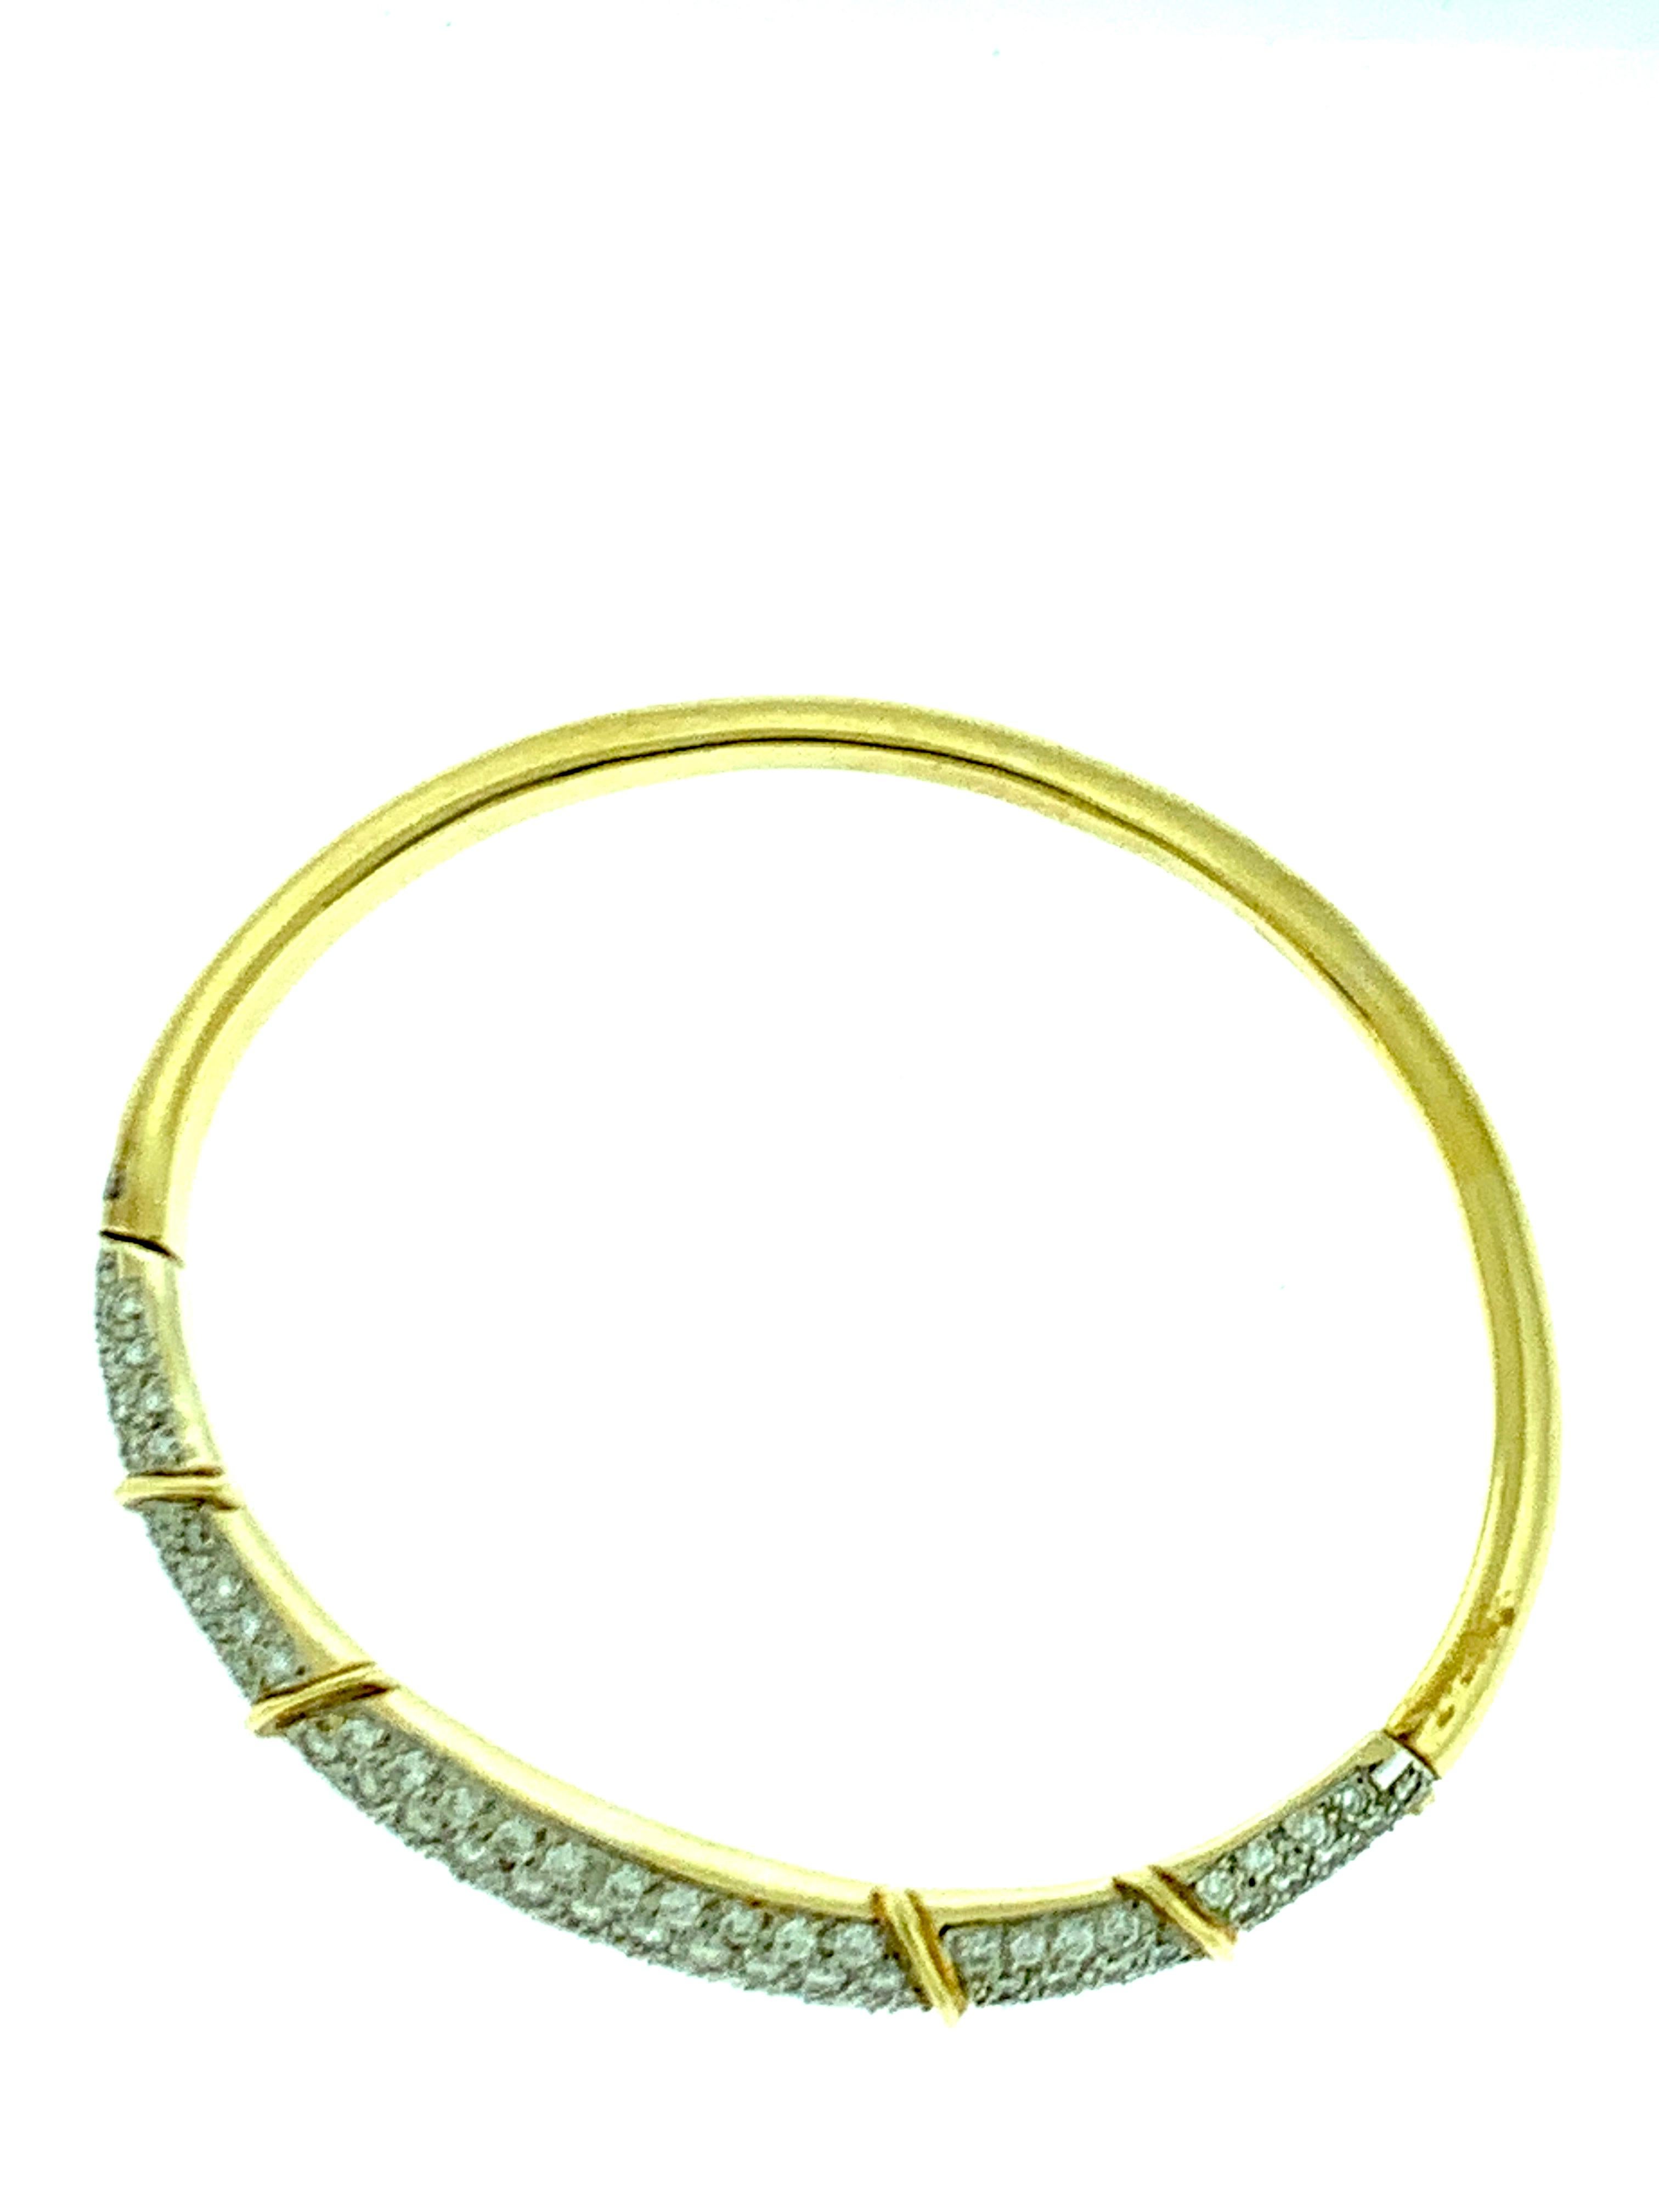 Women's 6 Carat Diamond Large Bangle /Bracelet in 18 Karat Yellow Gold 36 Grams